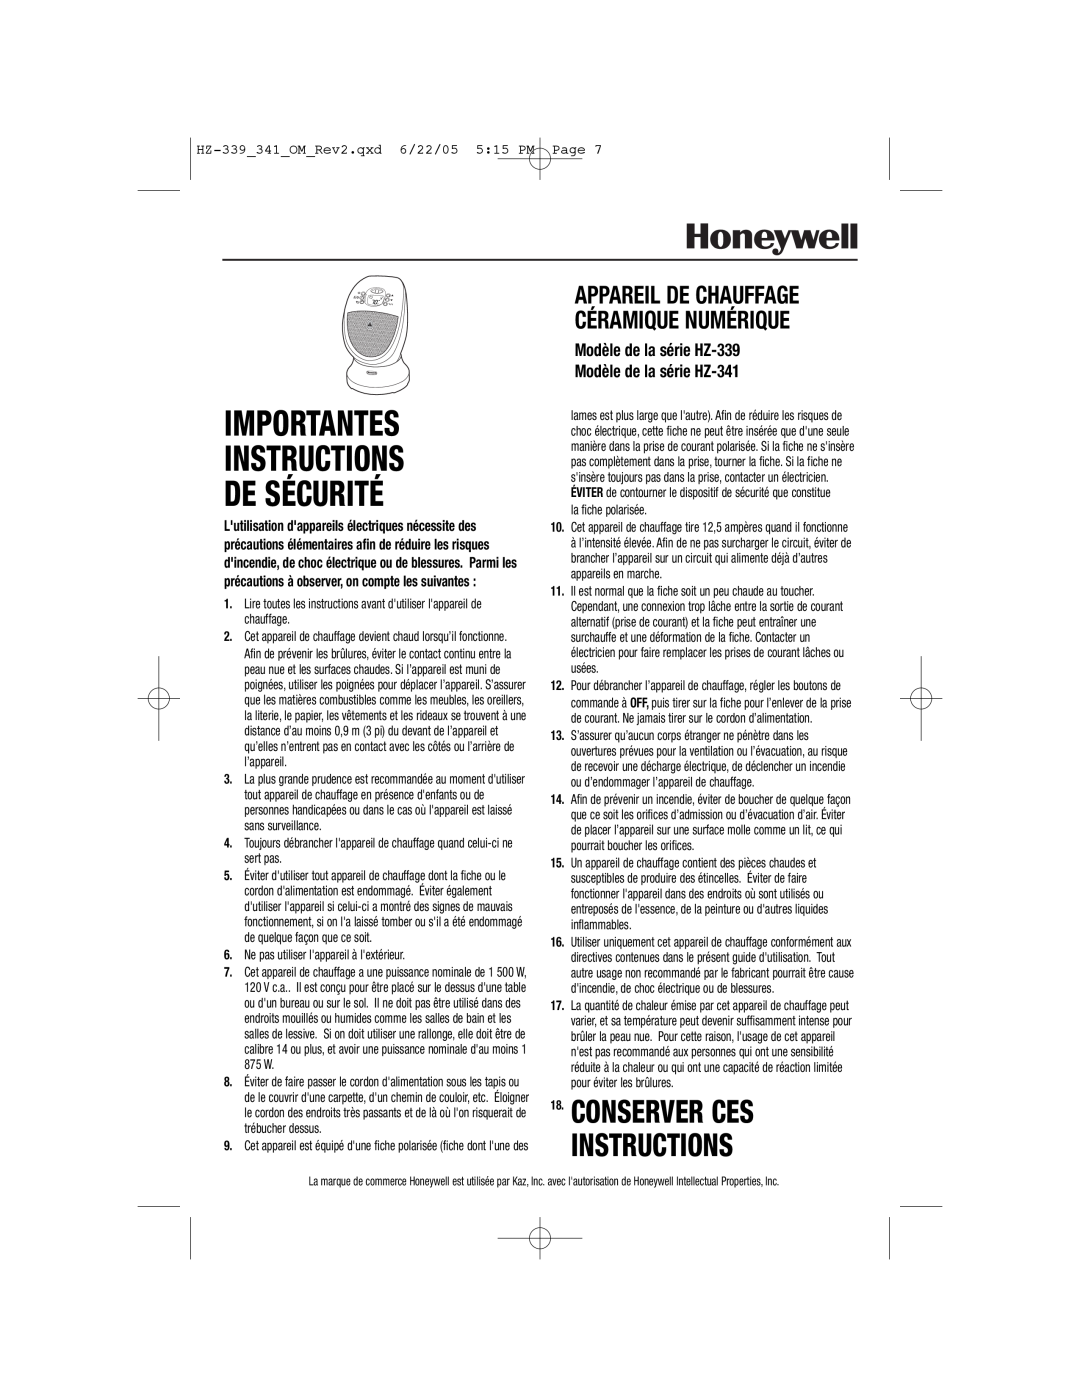 Honeywell HZ-339 Conserver Ces Instructions, Importantes Instructions De Sécurité, Ne pas utiliser lappareil à lextérieur 